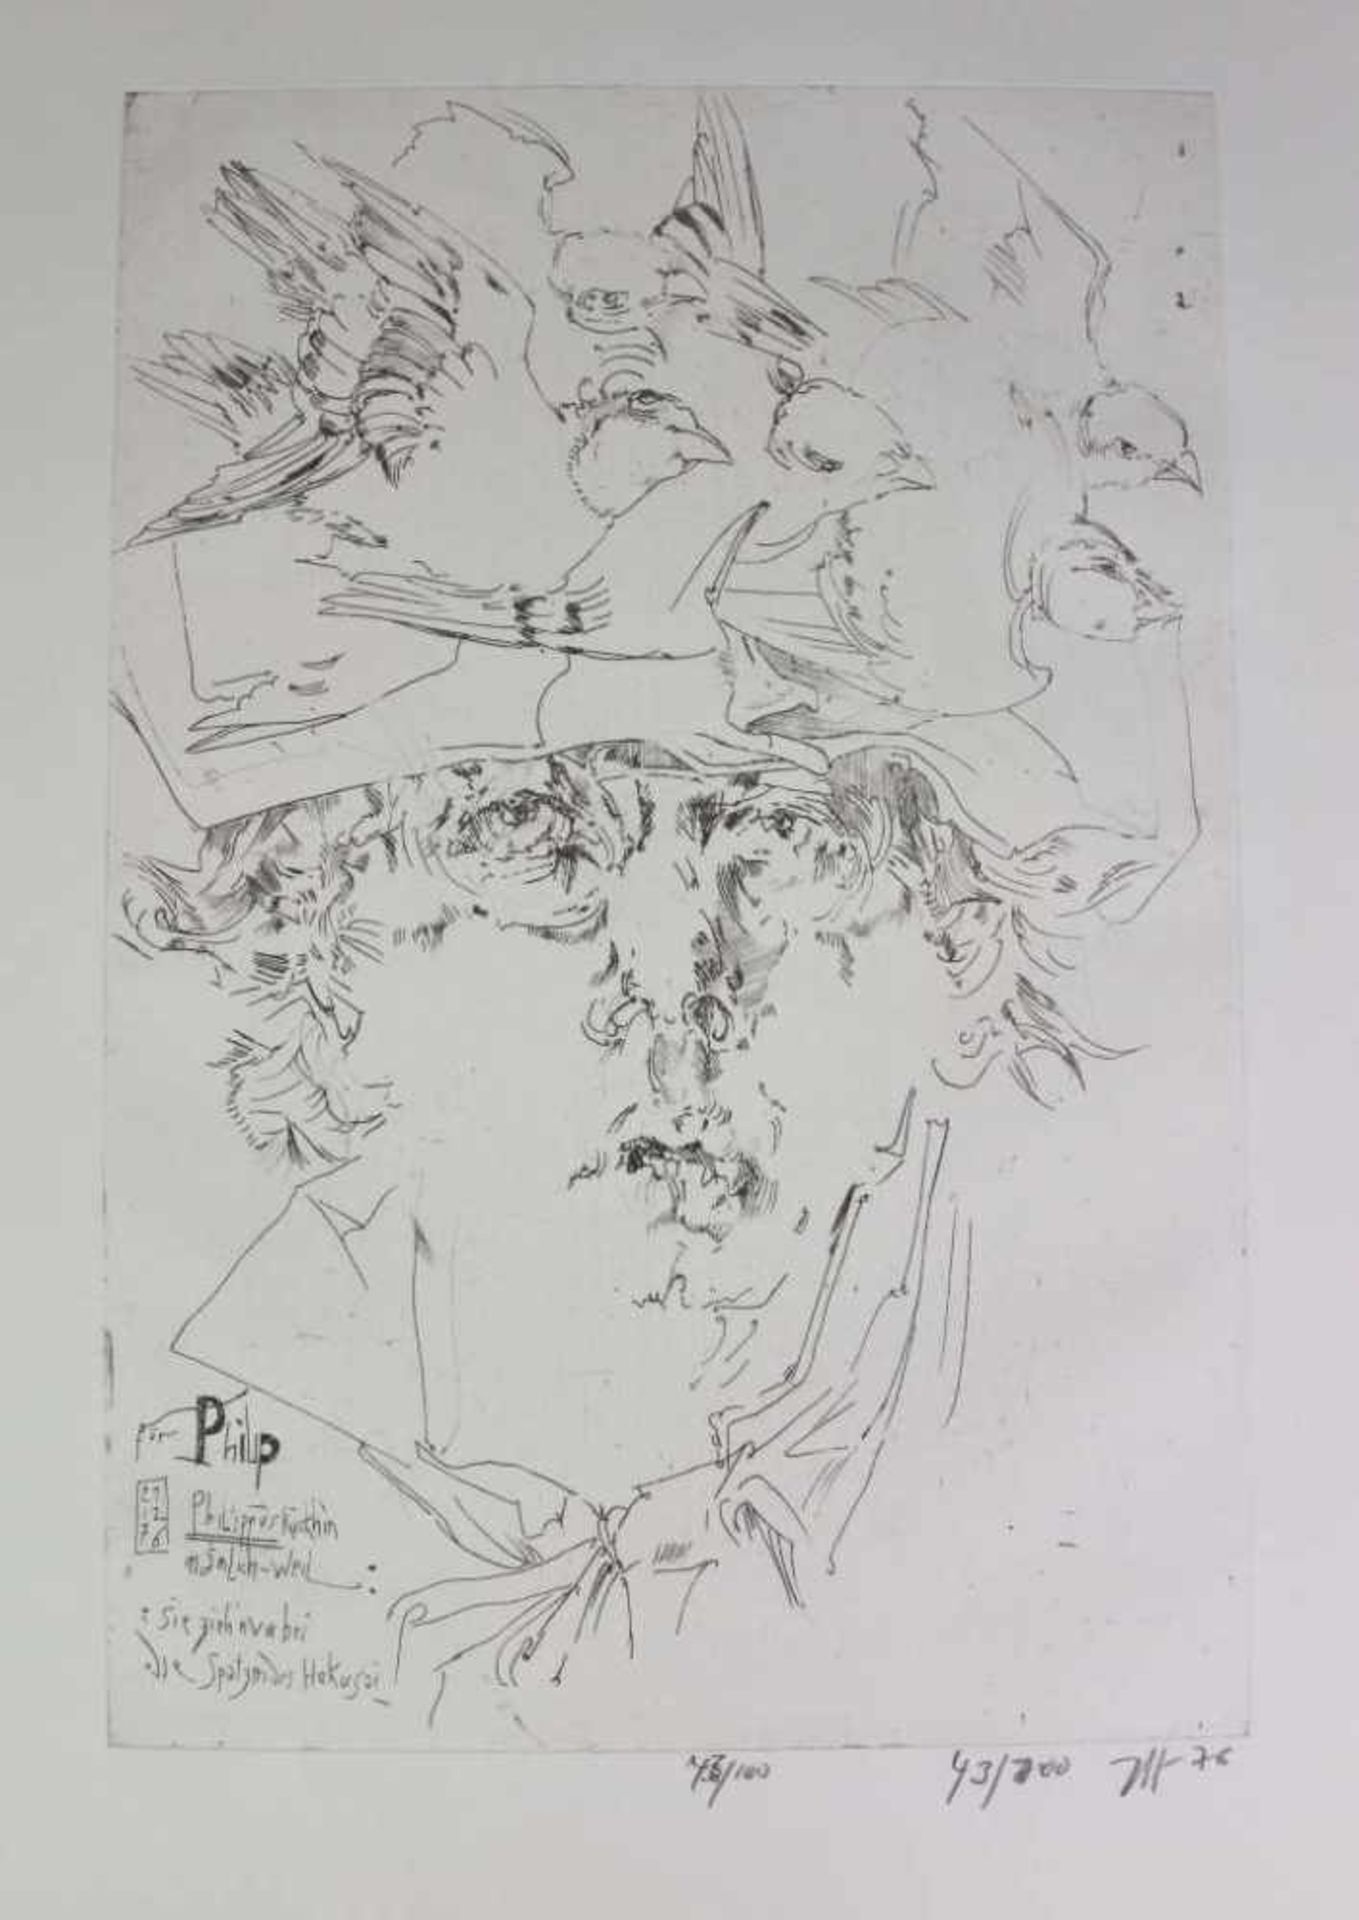 Horst JANSSEN, "Spatzen des Hokusai", u.re. monogrammiert und datiert, Expl. 43/100. Radierung.